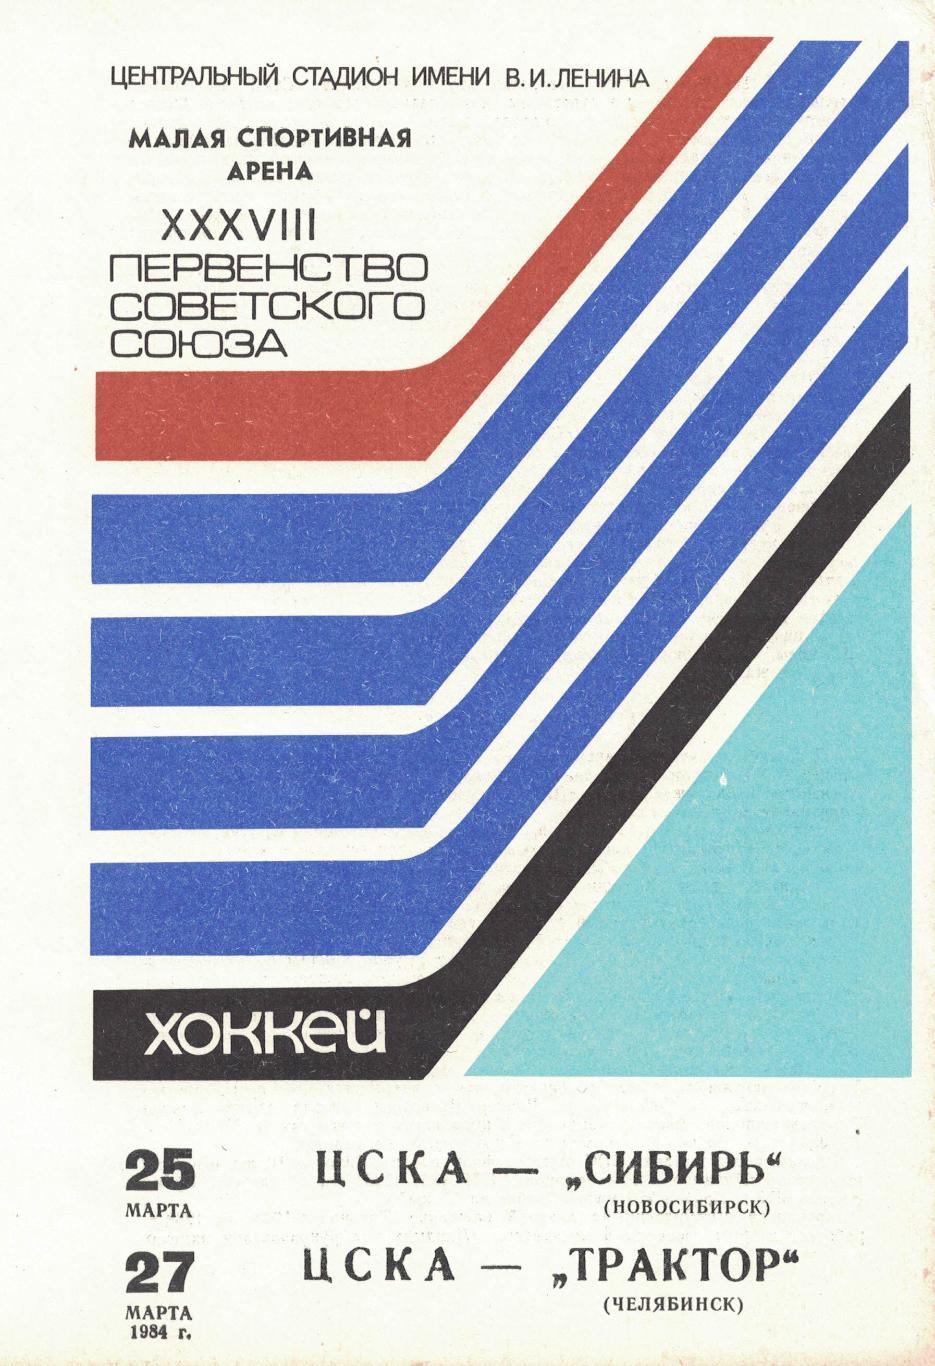 ЦСКА - Сибирь, ЦСКА - Трактор 25 и 27.03.1984. Чемпионат СССР